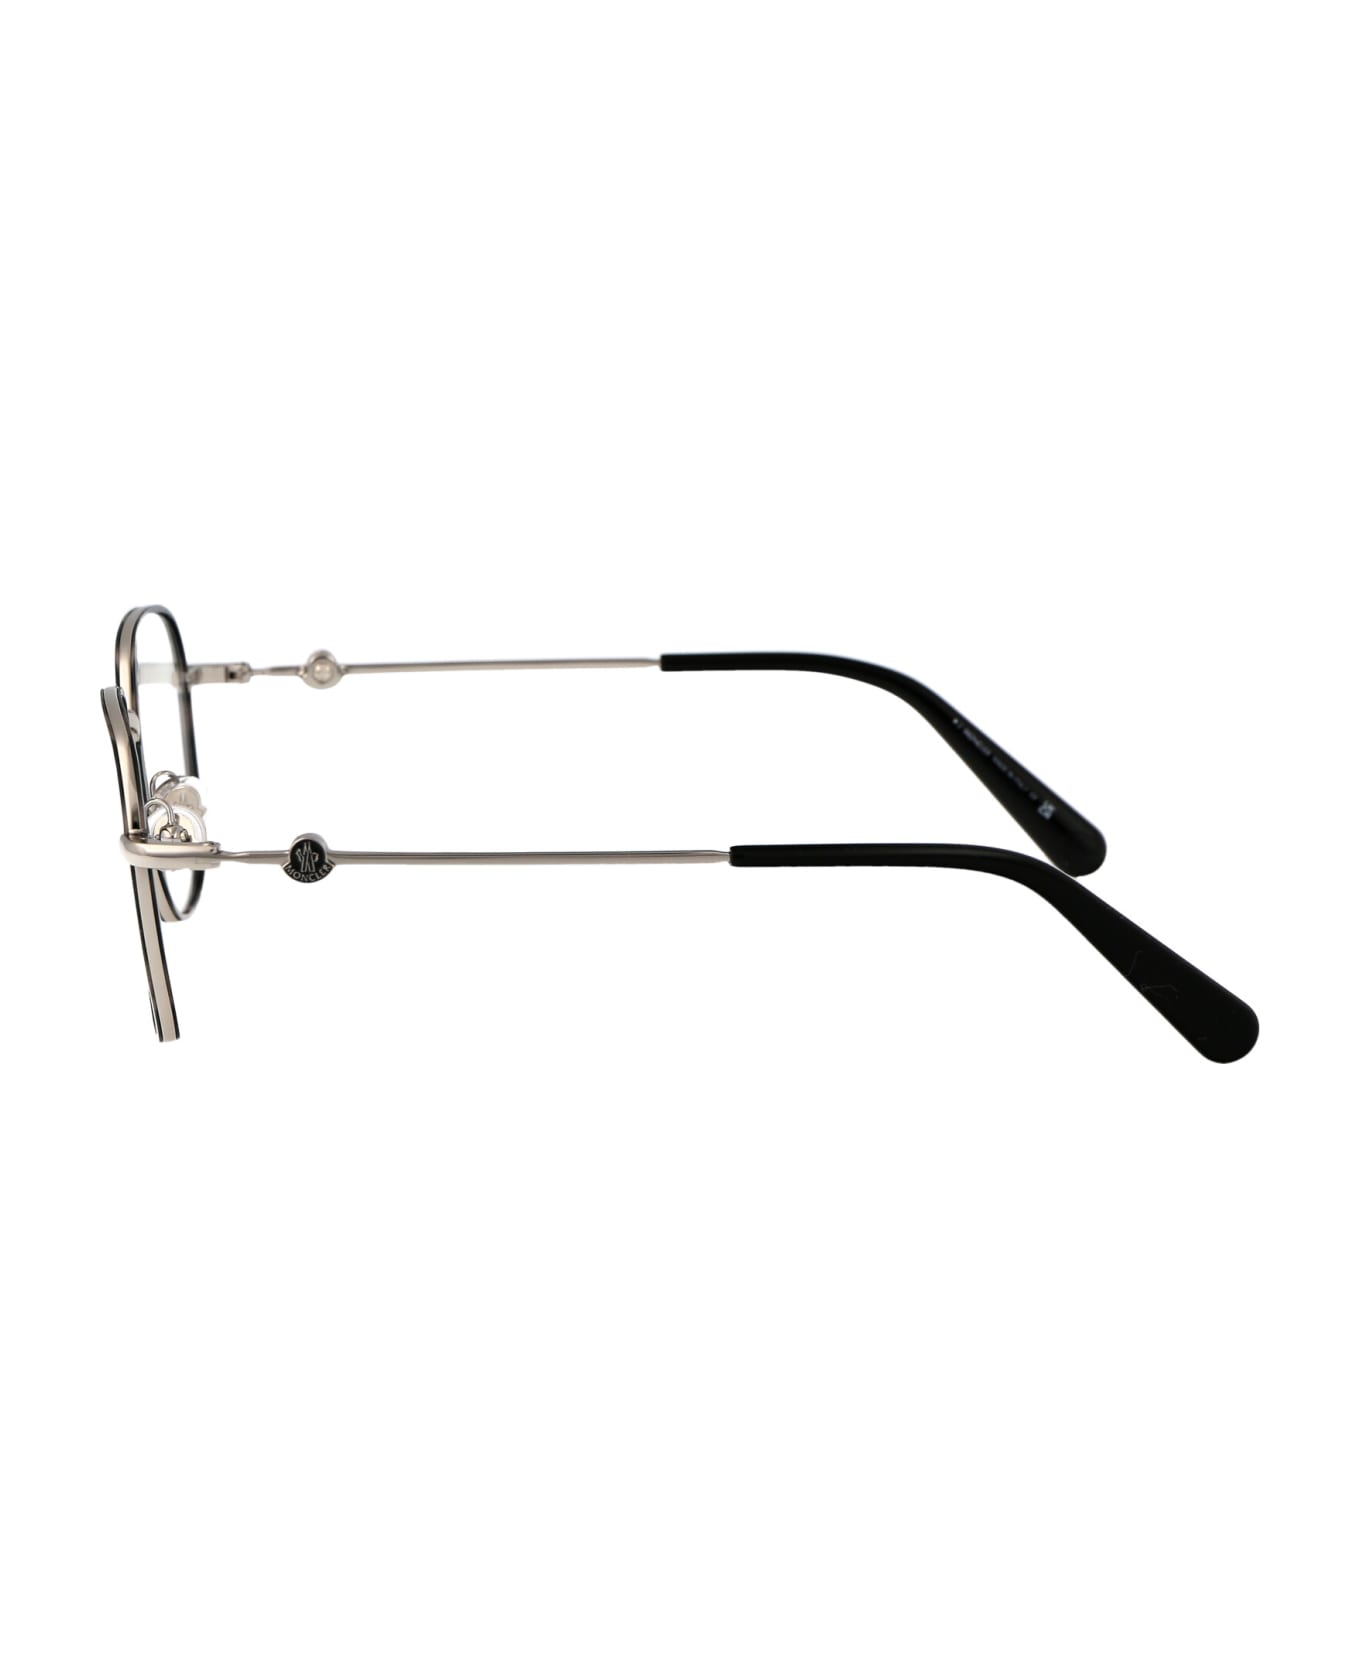 Moncler Eyewear Ml5125 Glasses - 016 Grigio/Avana アイウェア